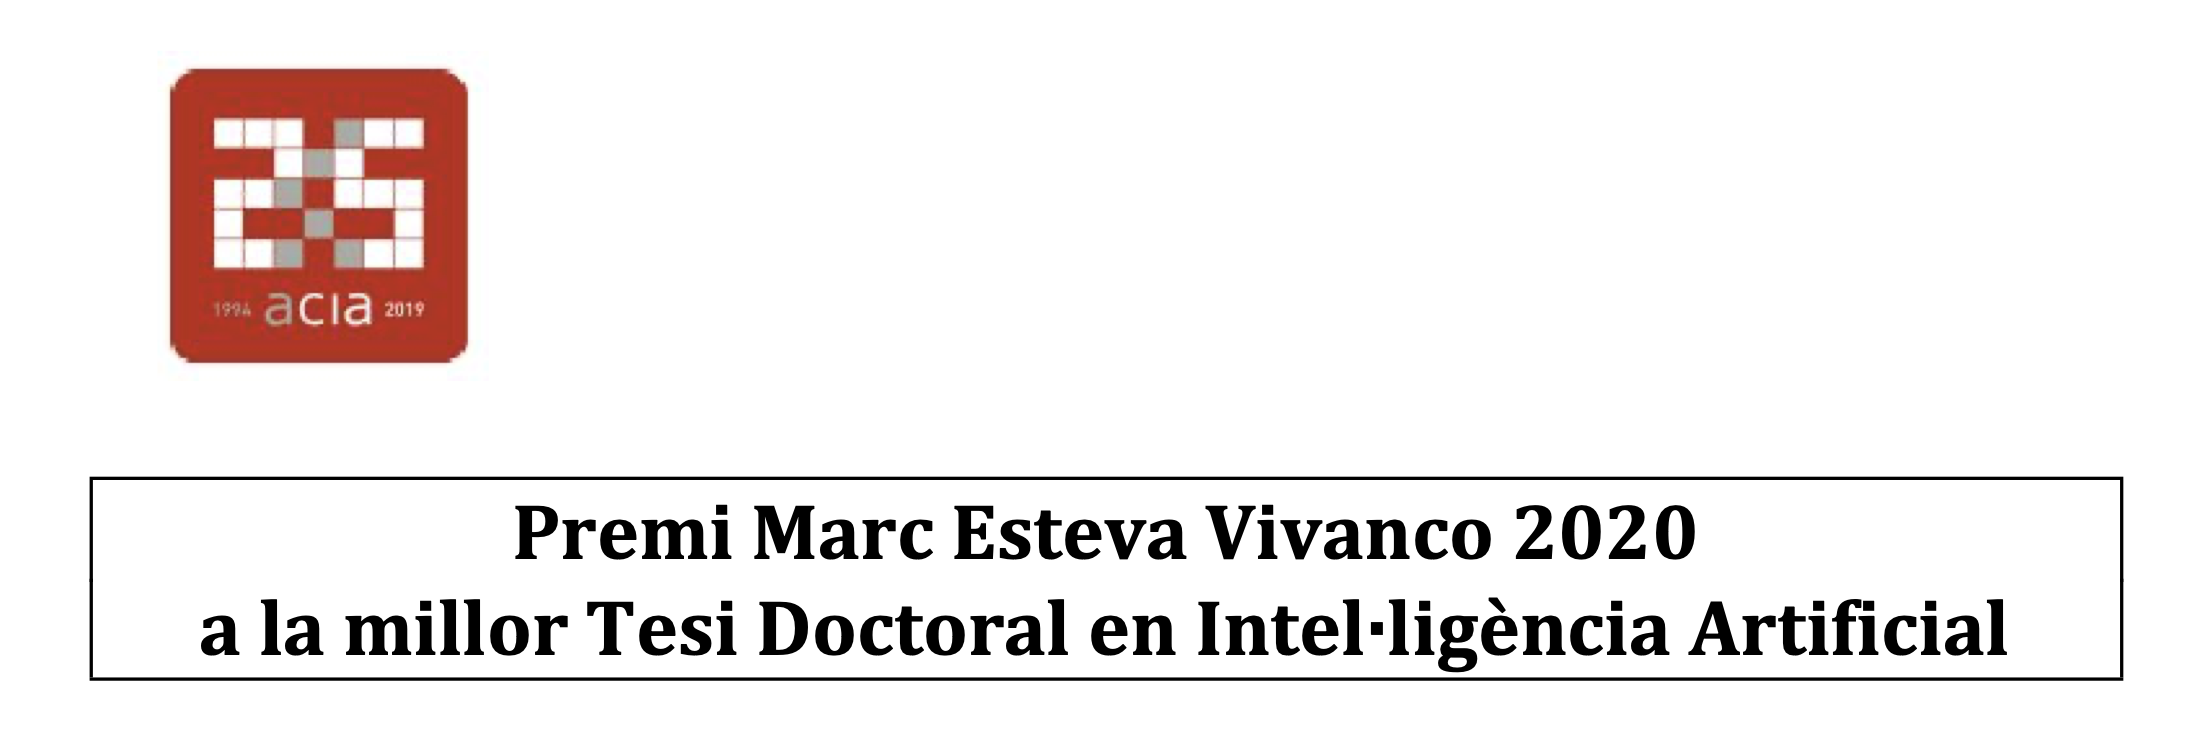 Premi Marc Esteva Vivanco 2020